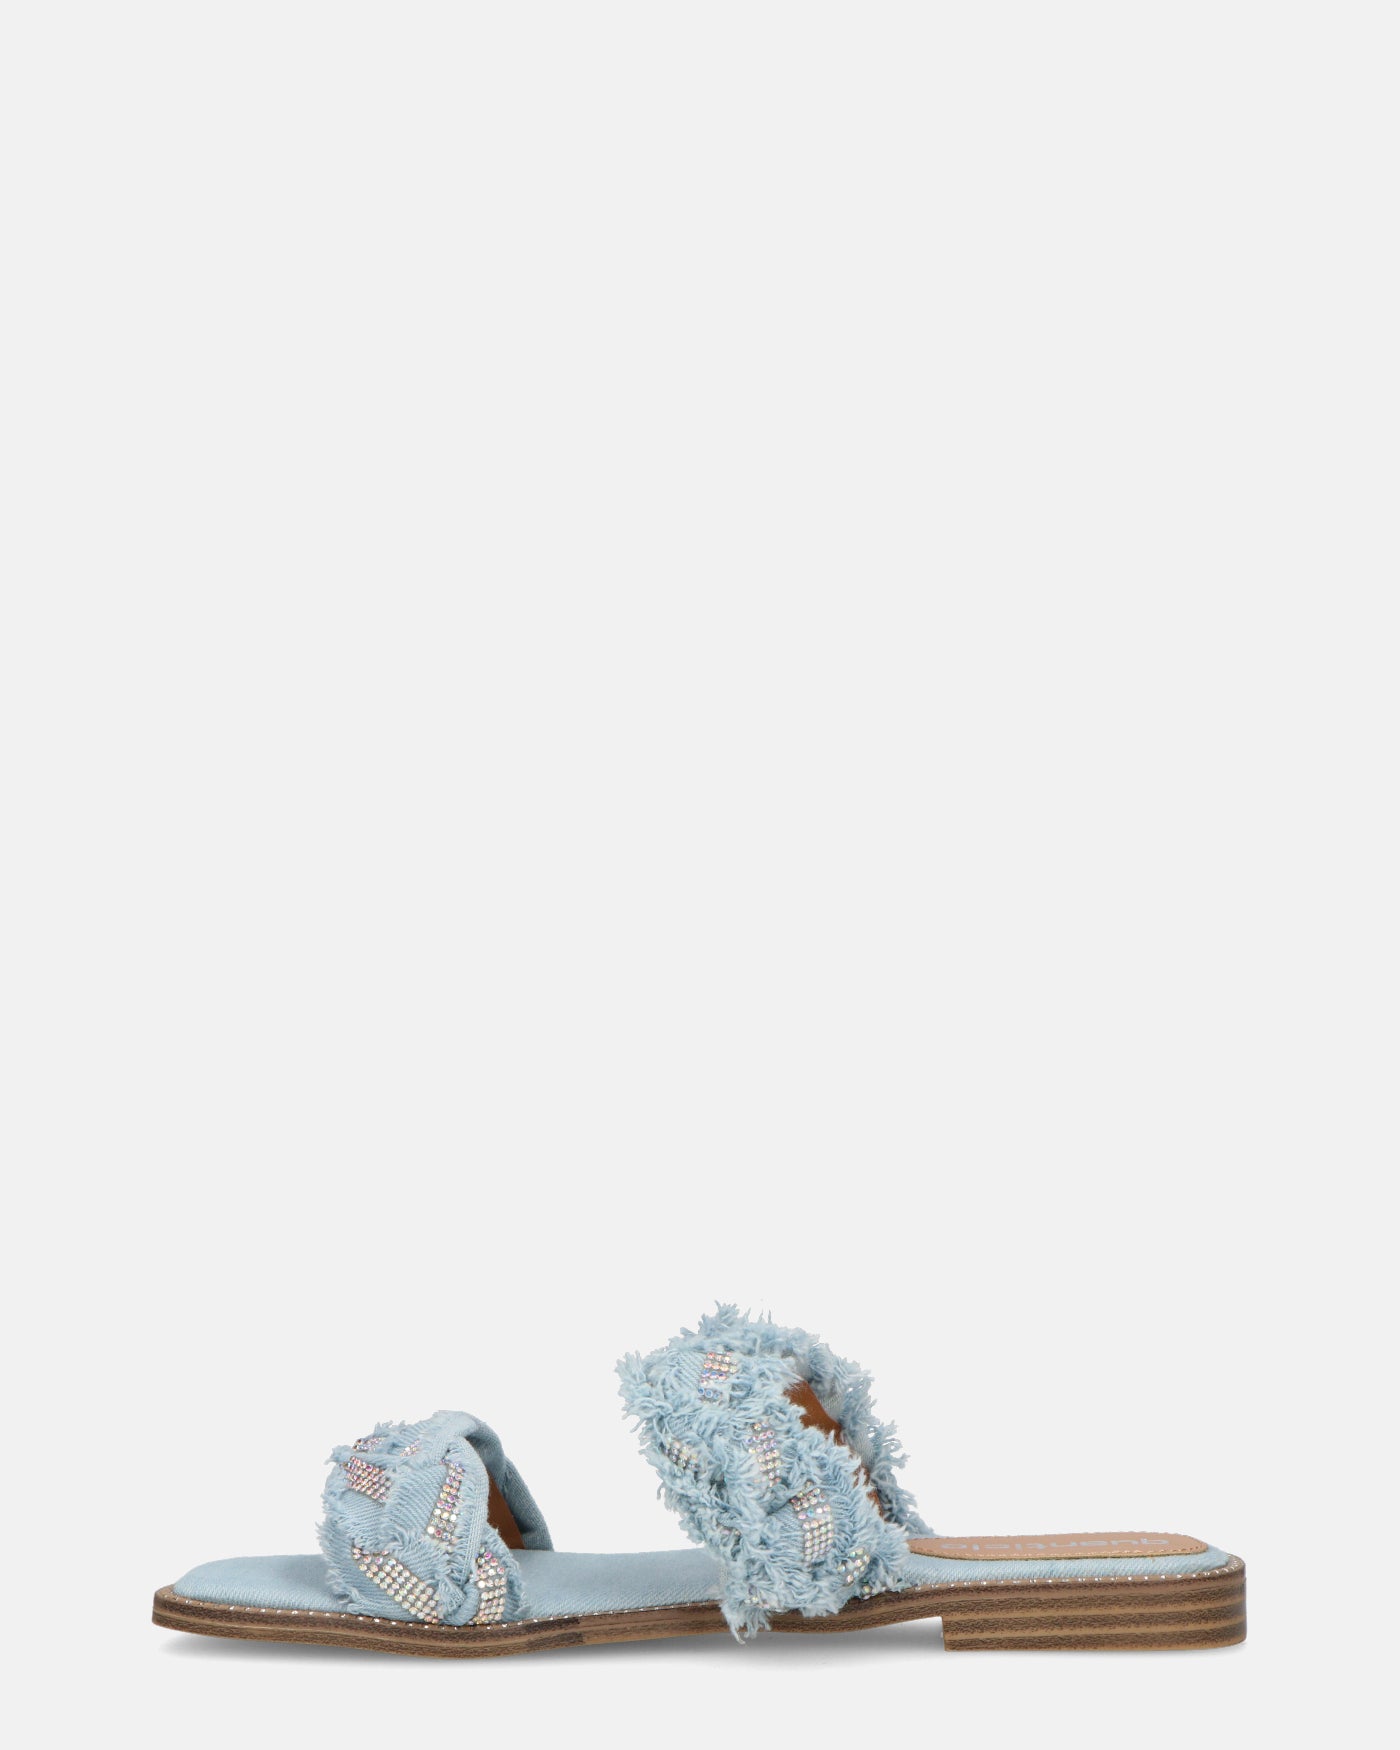 KALI - sandales en tissu denim clair avec pierres précieuses